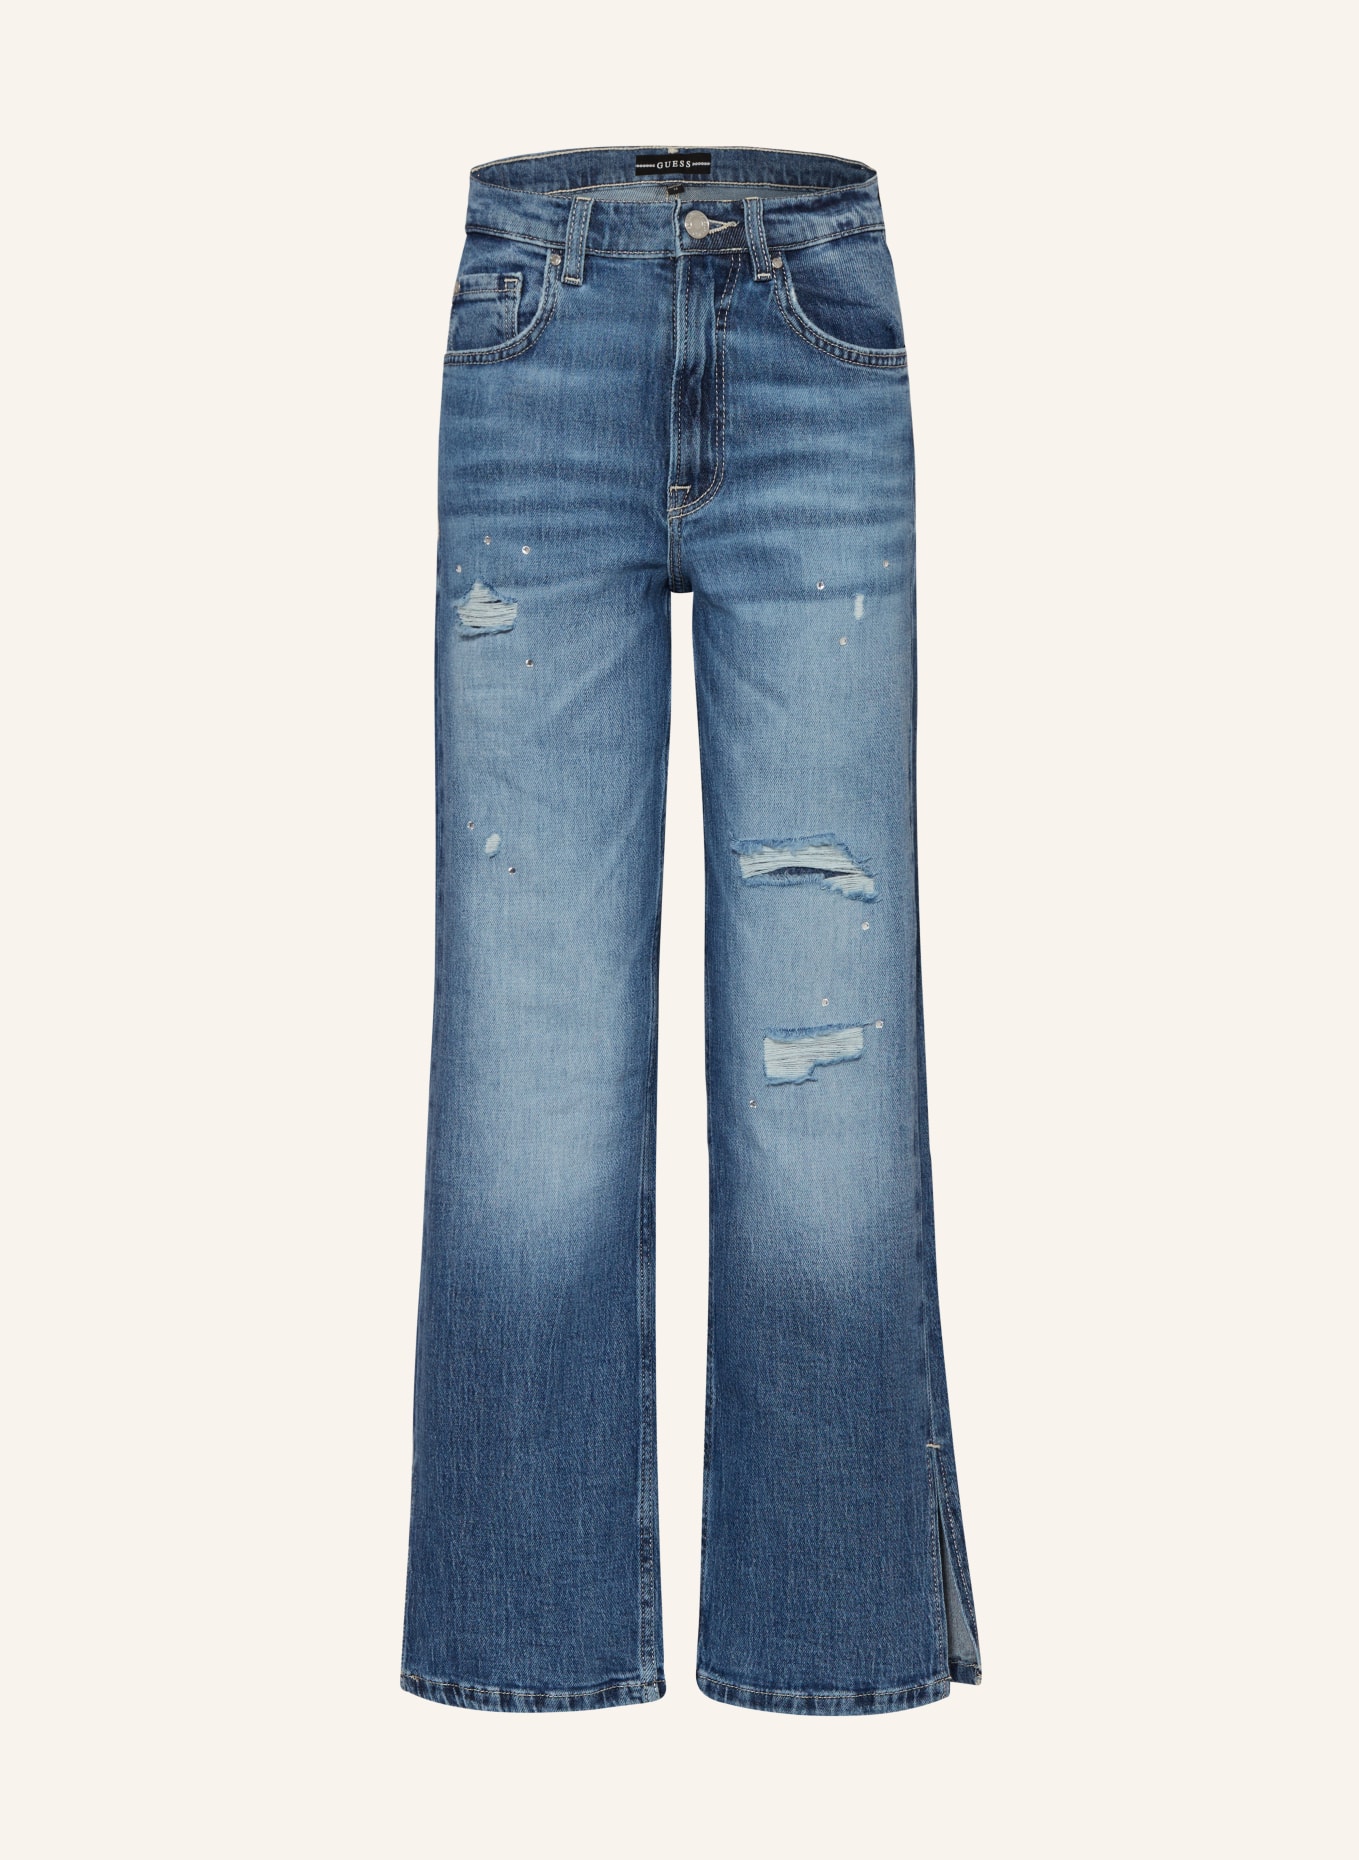 GUESS Jeans mit Schmucksteinen, Farbe: RGDN NEW RIGID DARK WA (Bild 1)